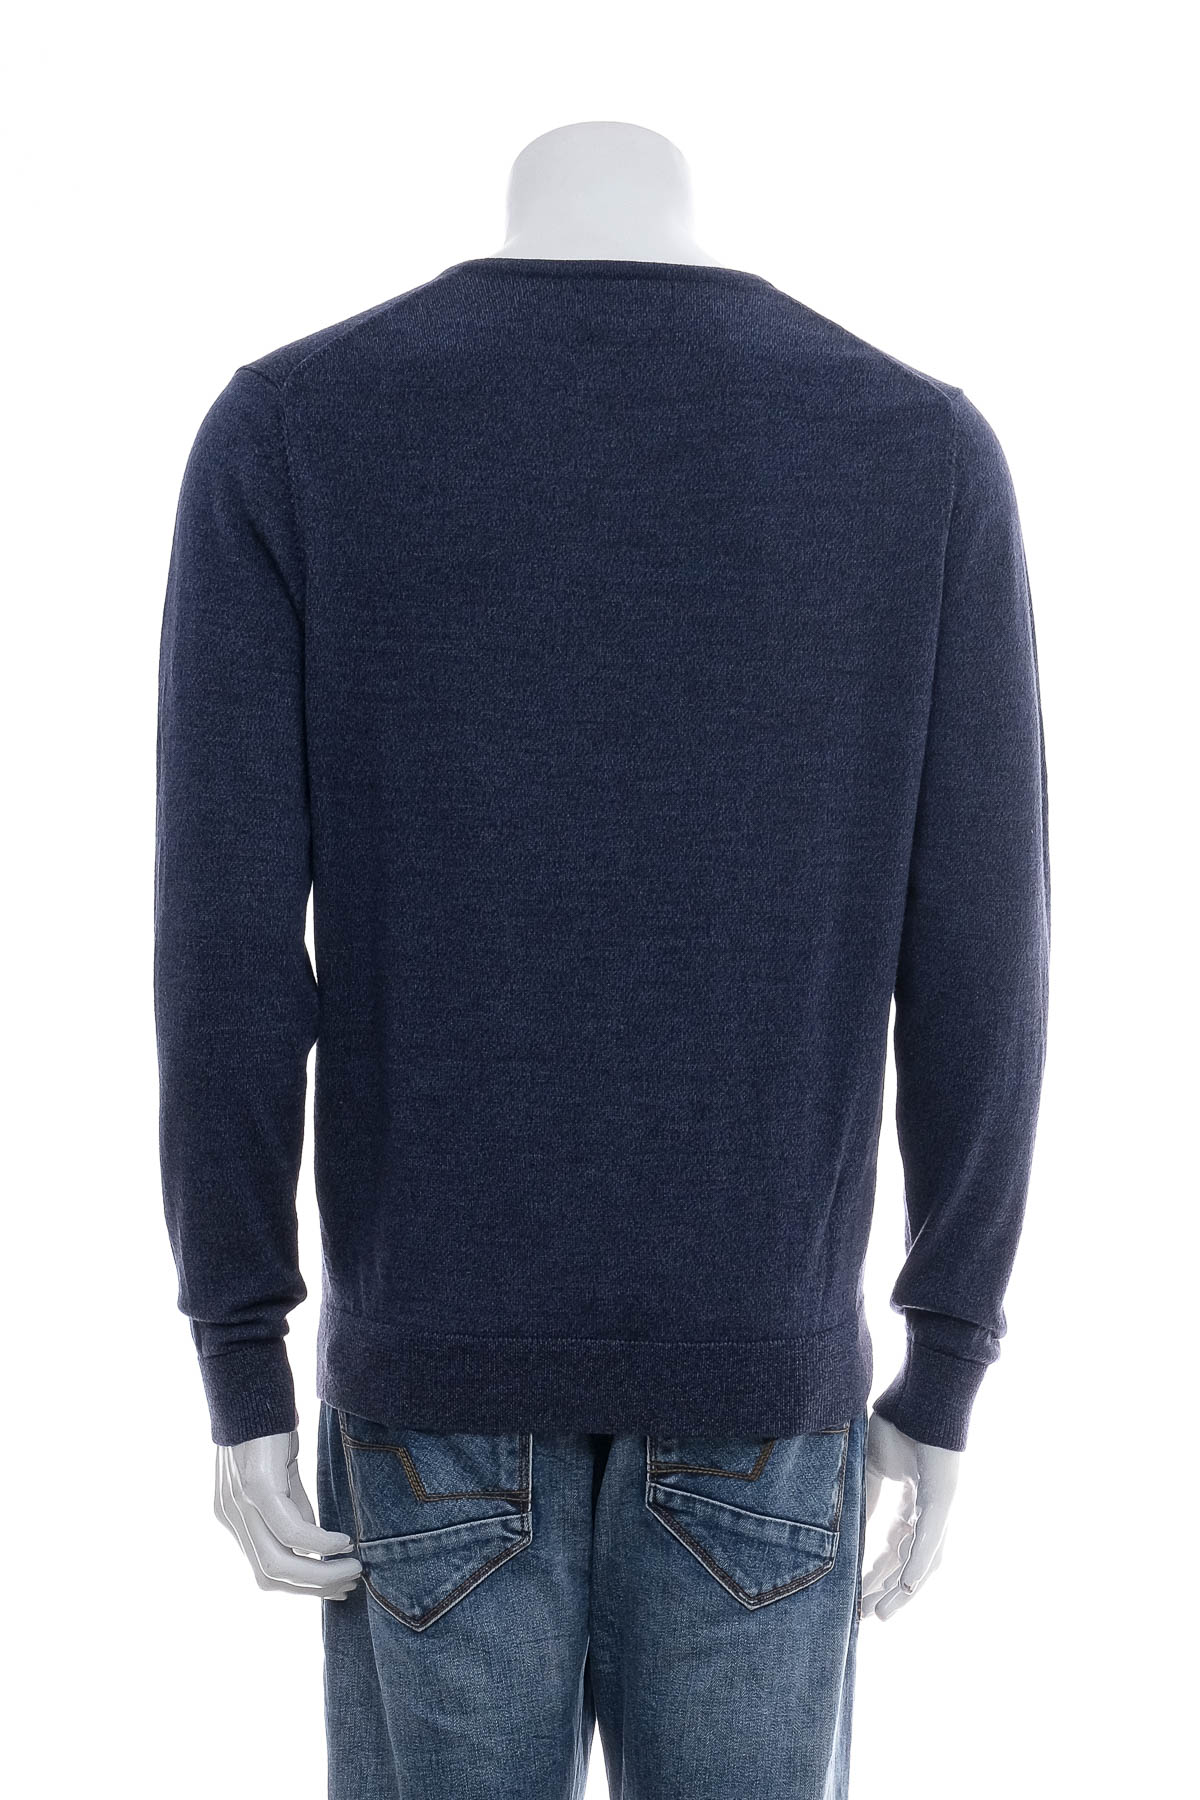 Men's sweater - NORDSTROM - 1